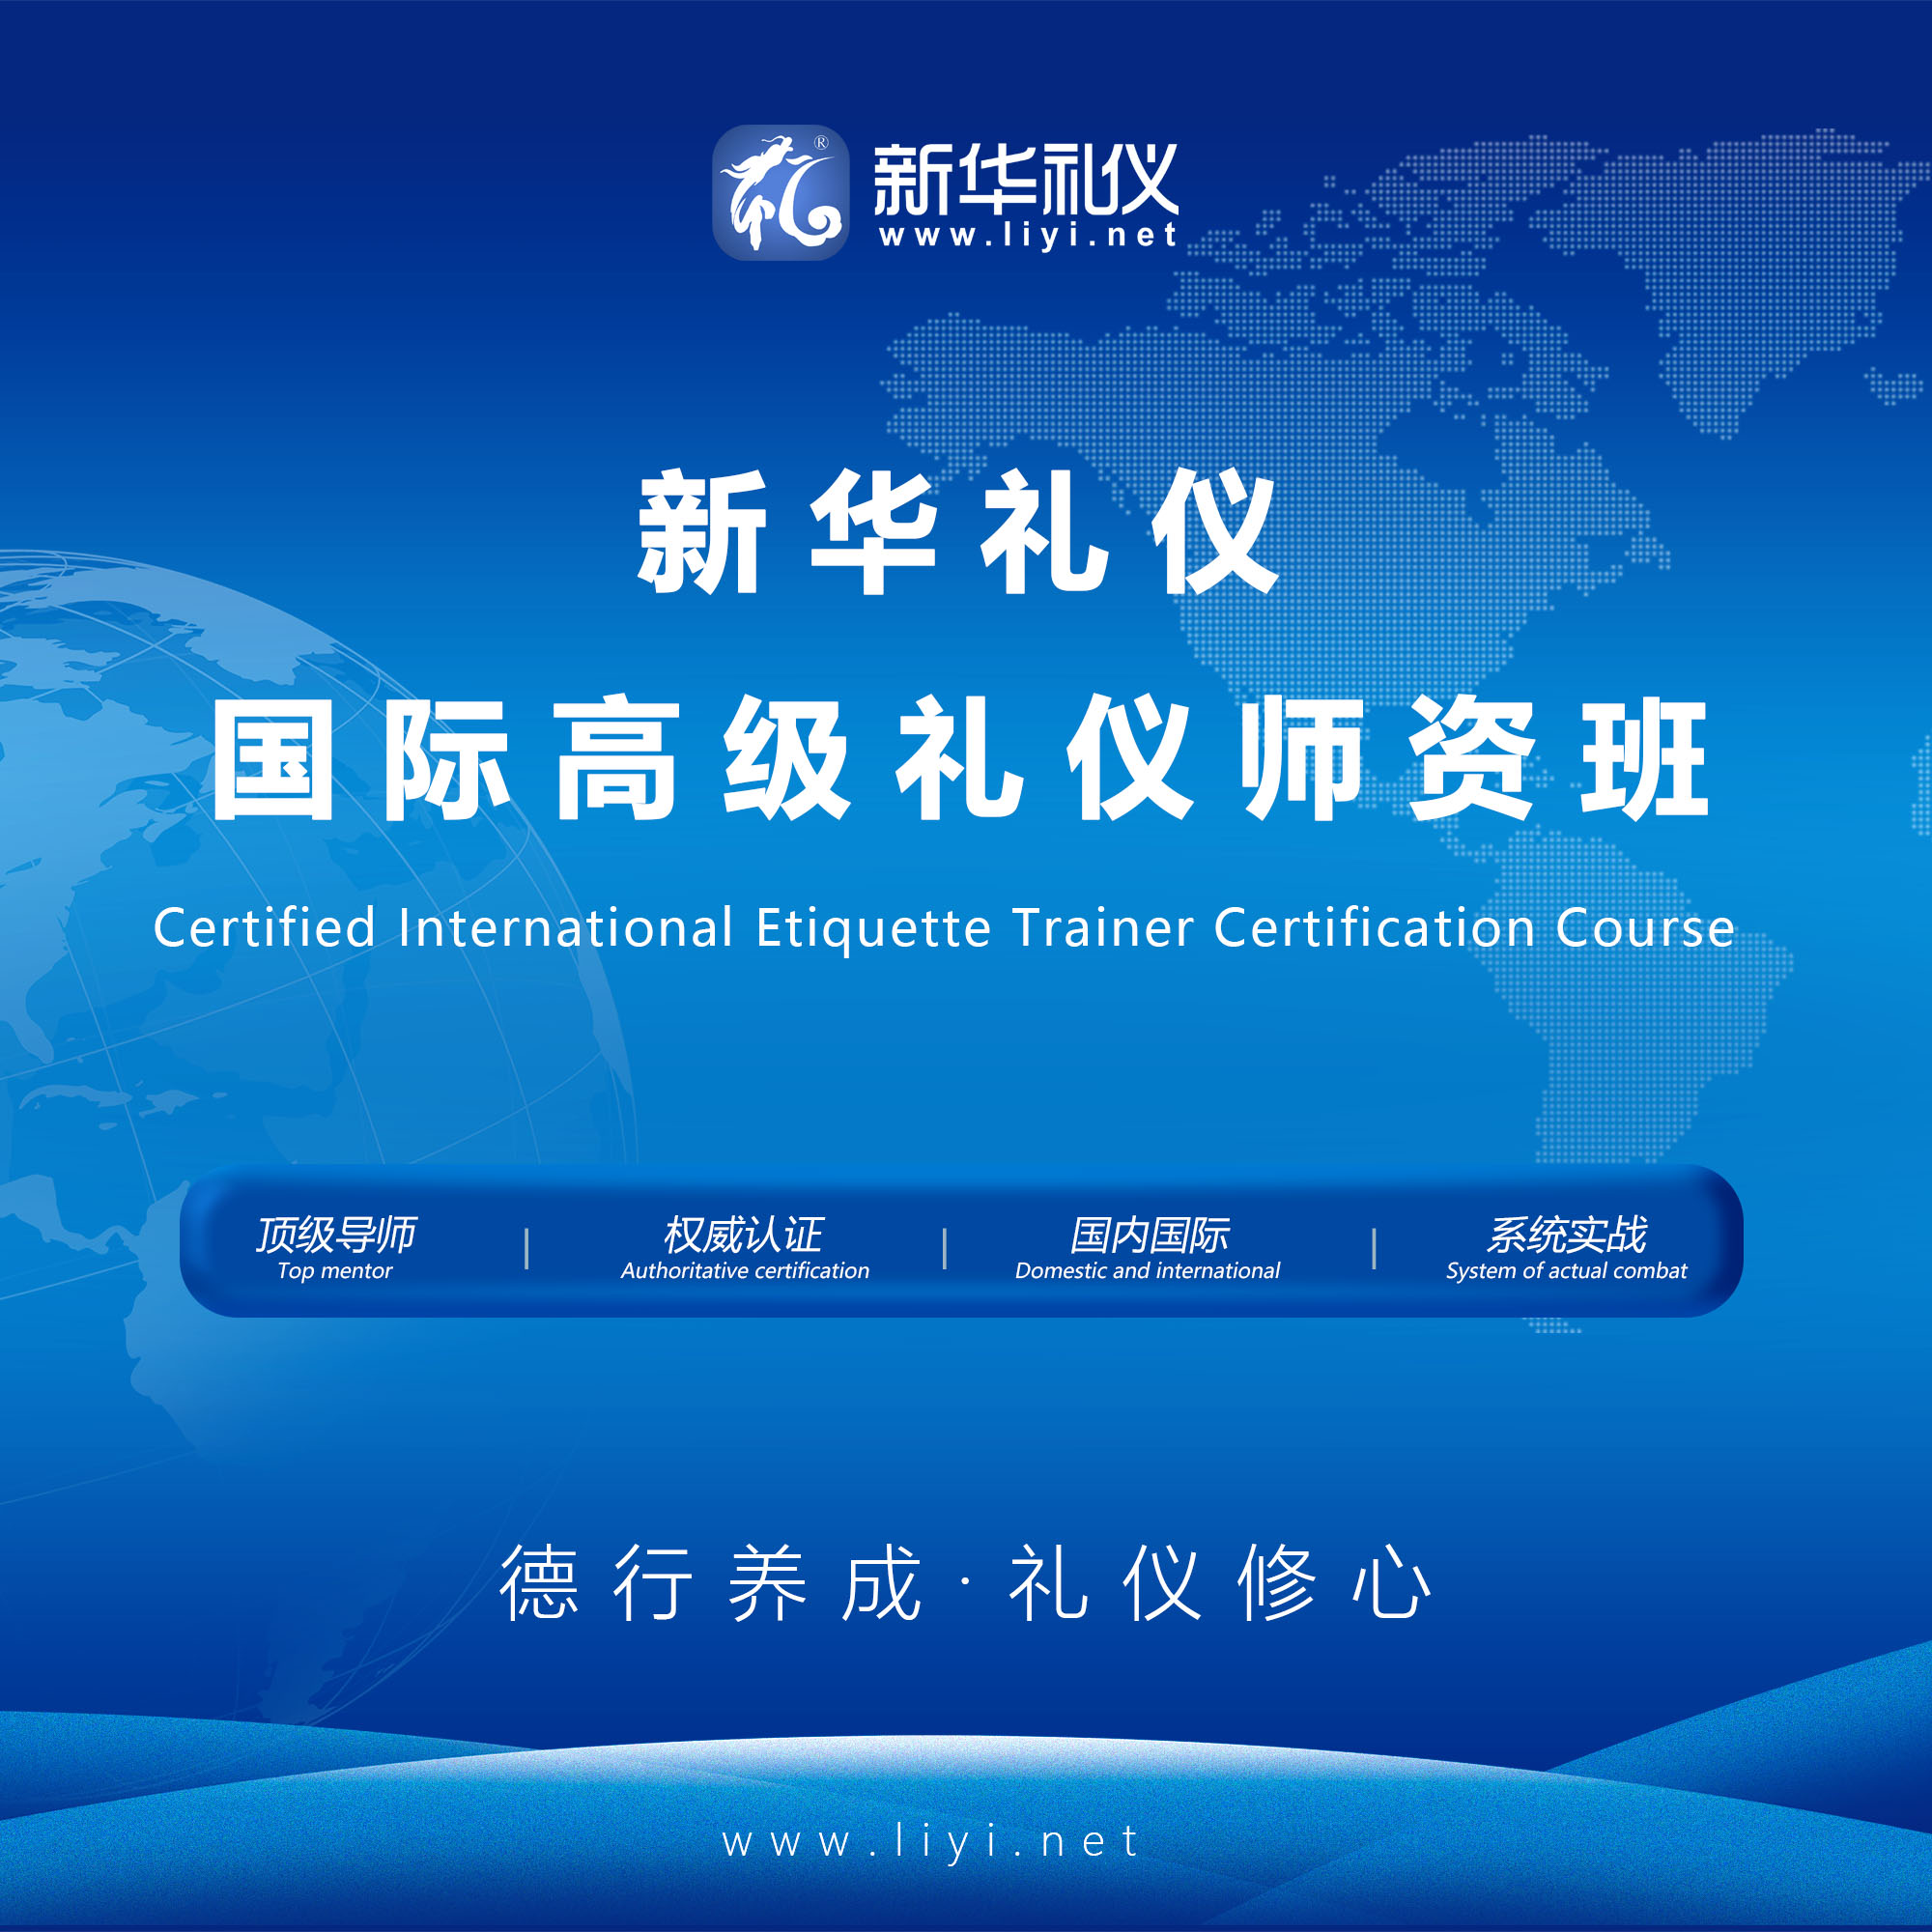 保定2020年6月25日·上海·新华礼伊《国际注册高级礼仪培训师认证班》